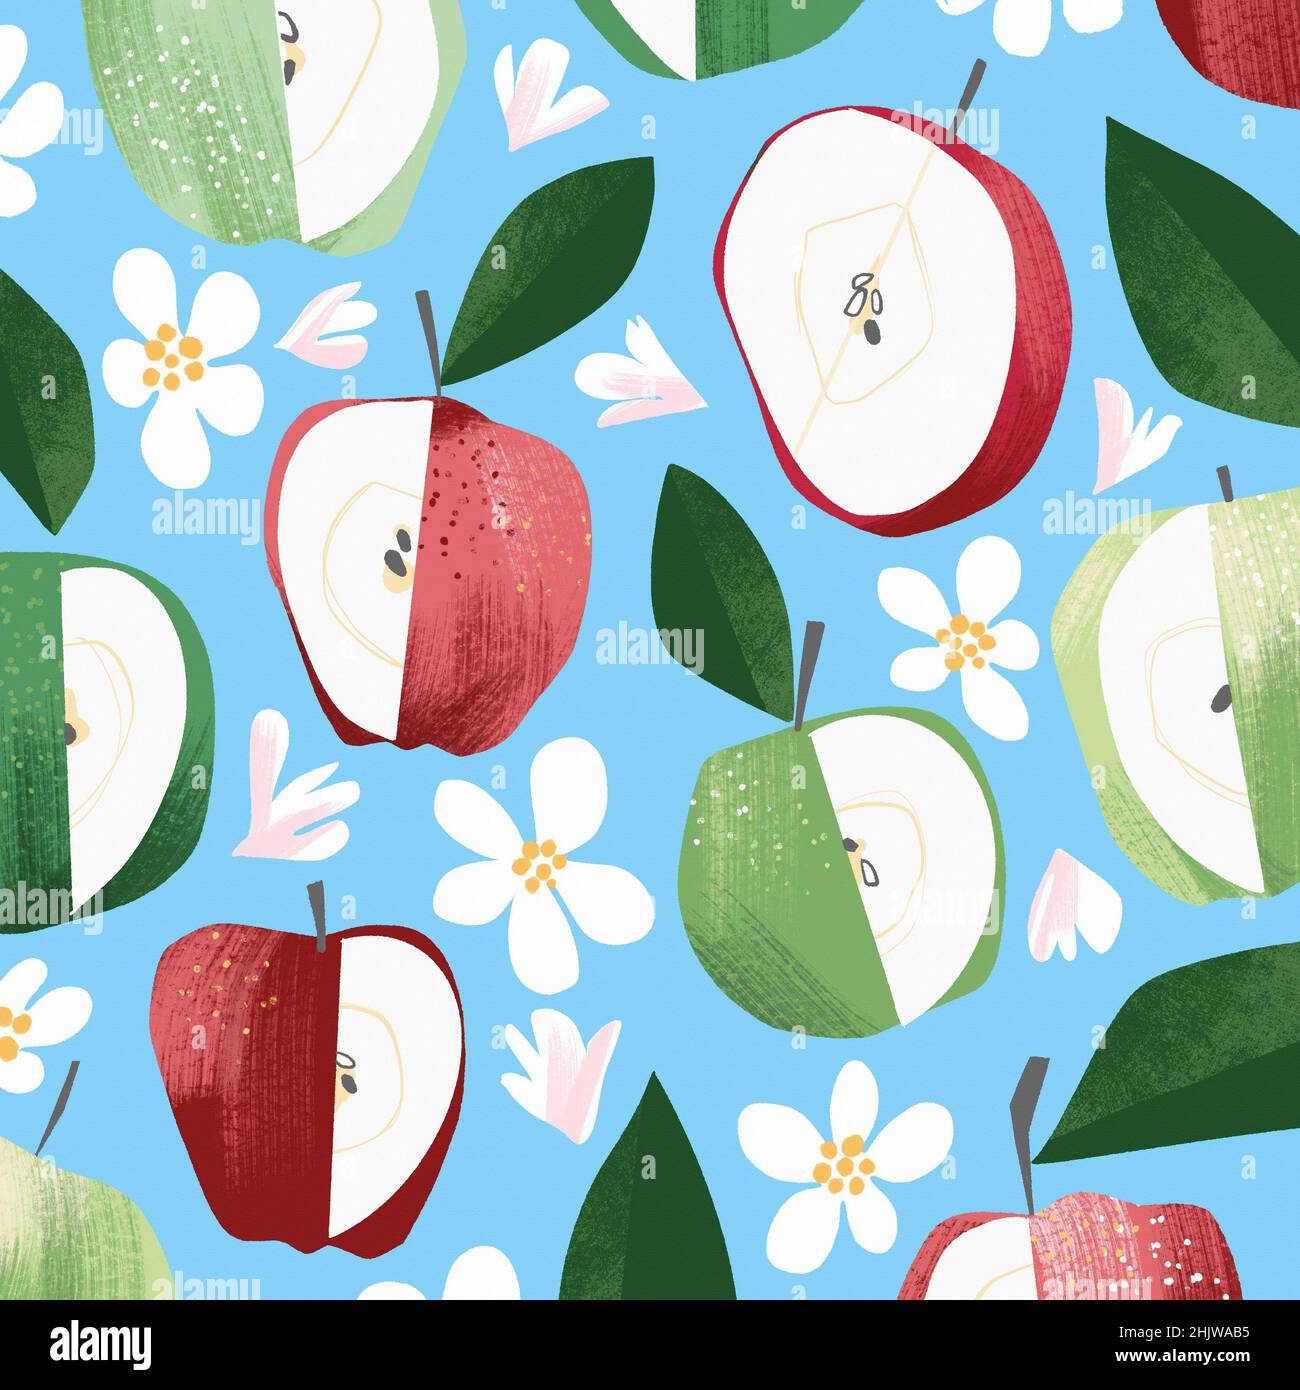 Full frame apple pattern Stock Photo